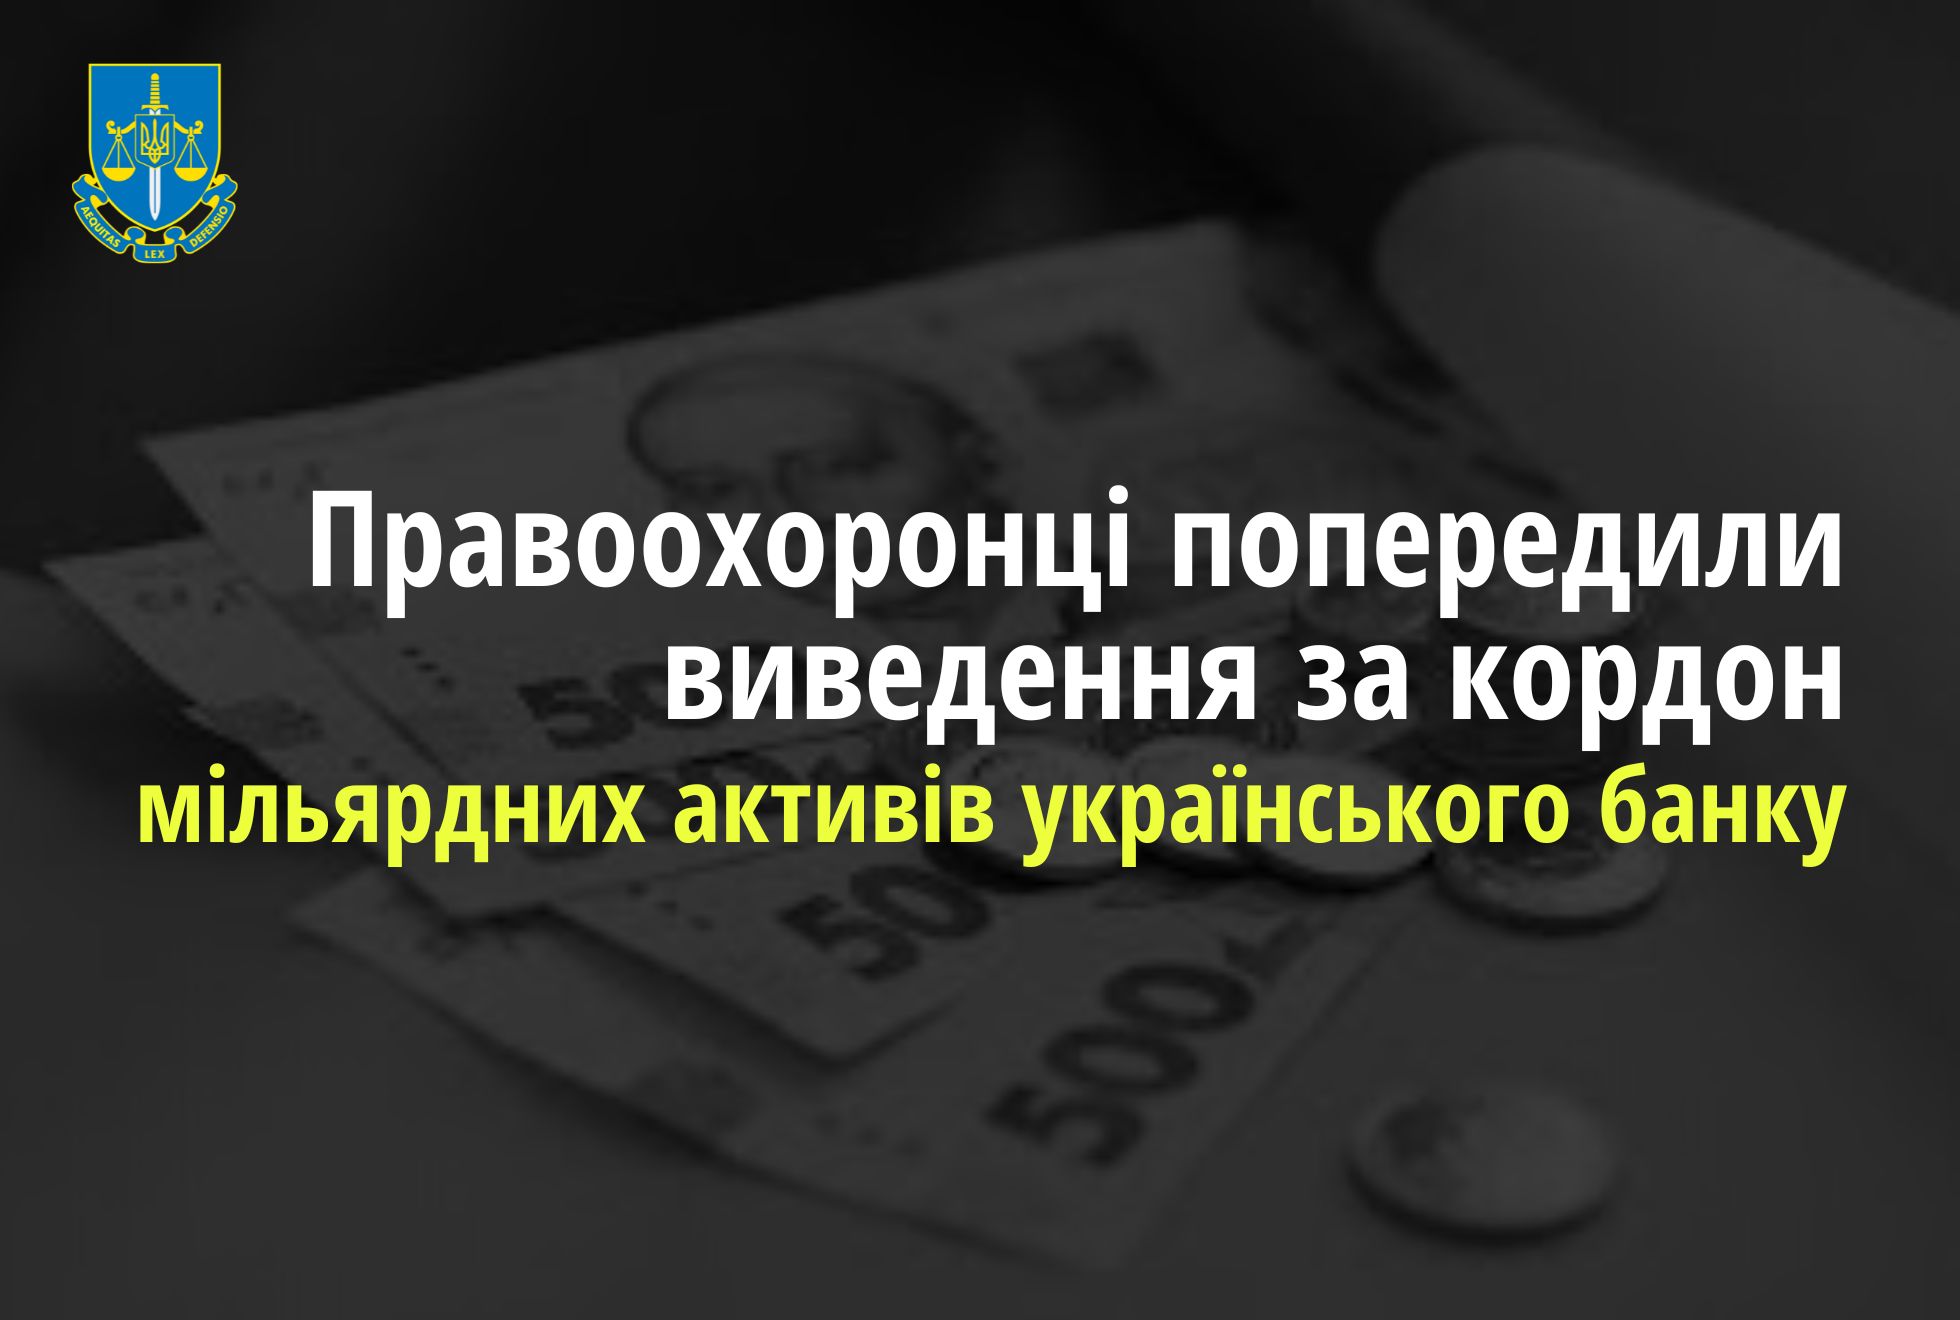 Правоохоронці попередили виведення за кордон мільярдних активів одного з українських банків